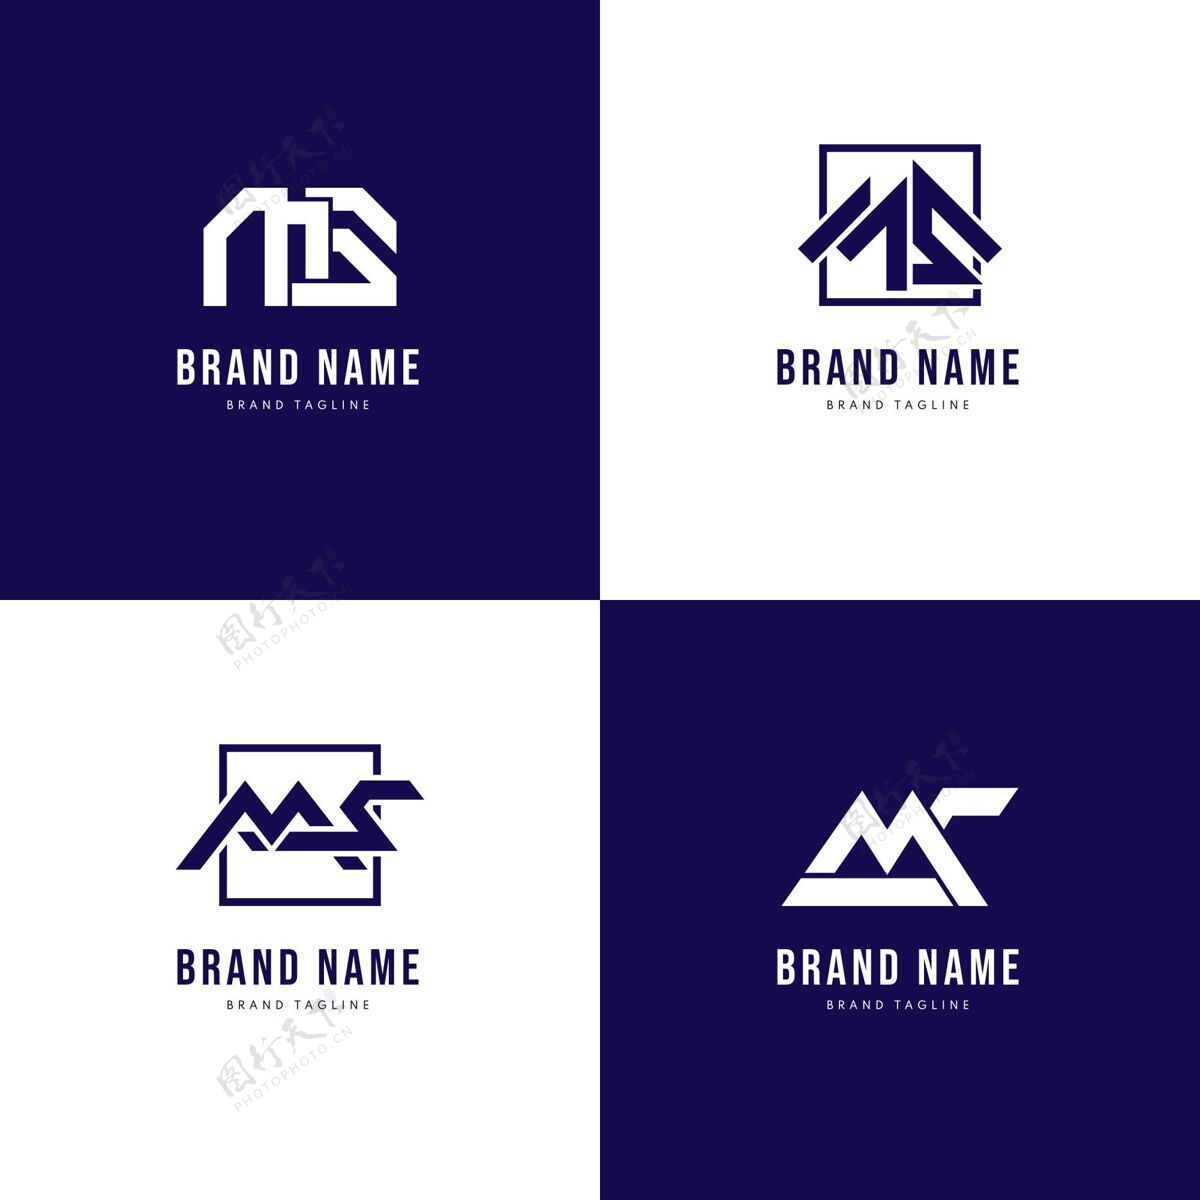 标识一套平面设计ms标志模板品牌品牌标识模板